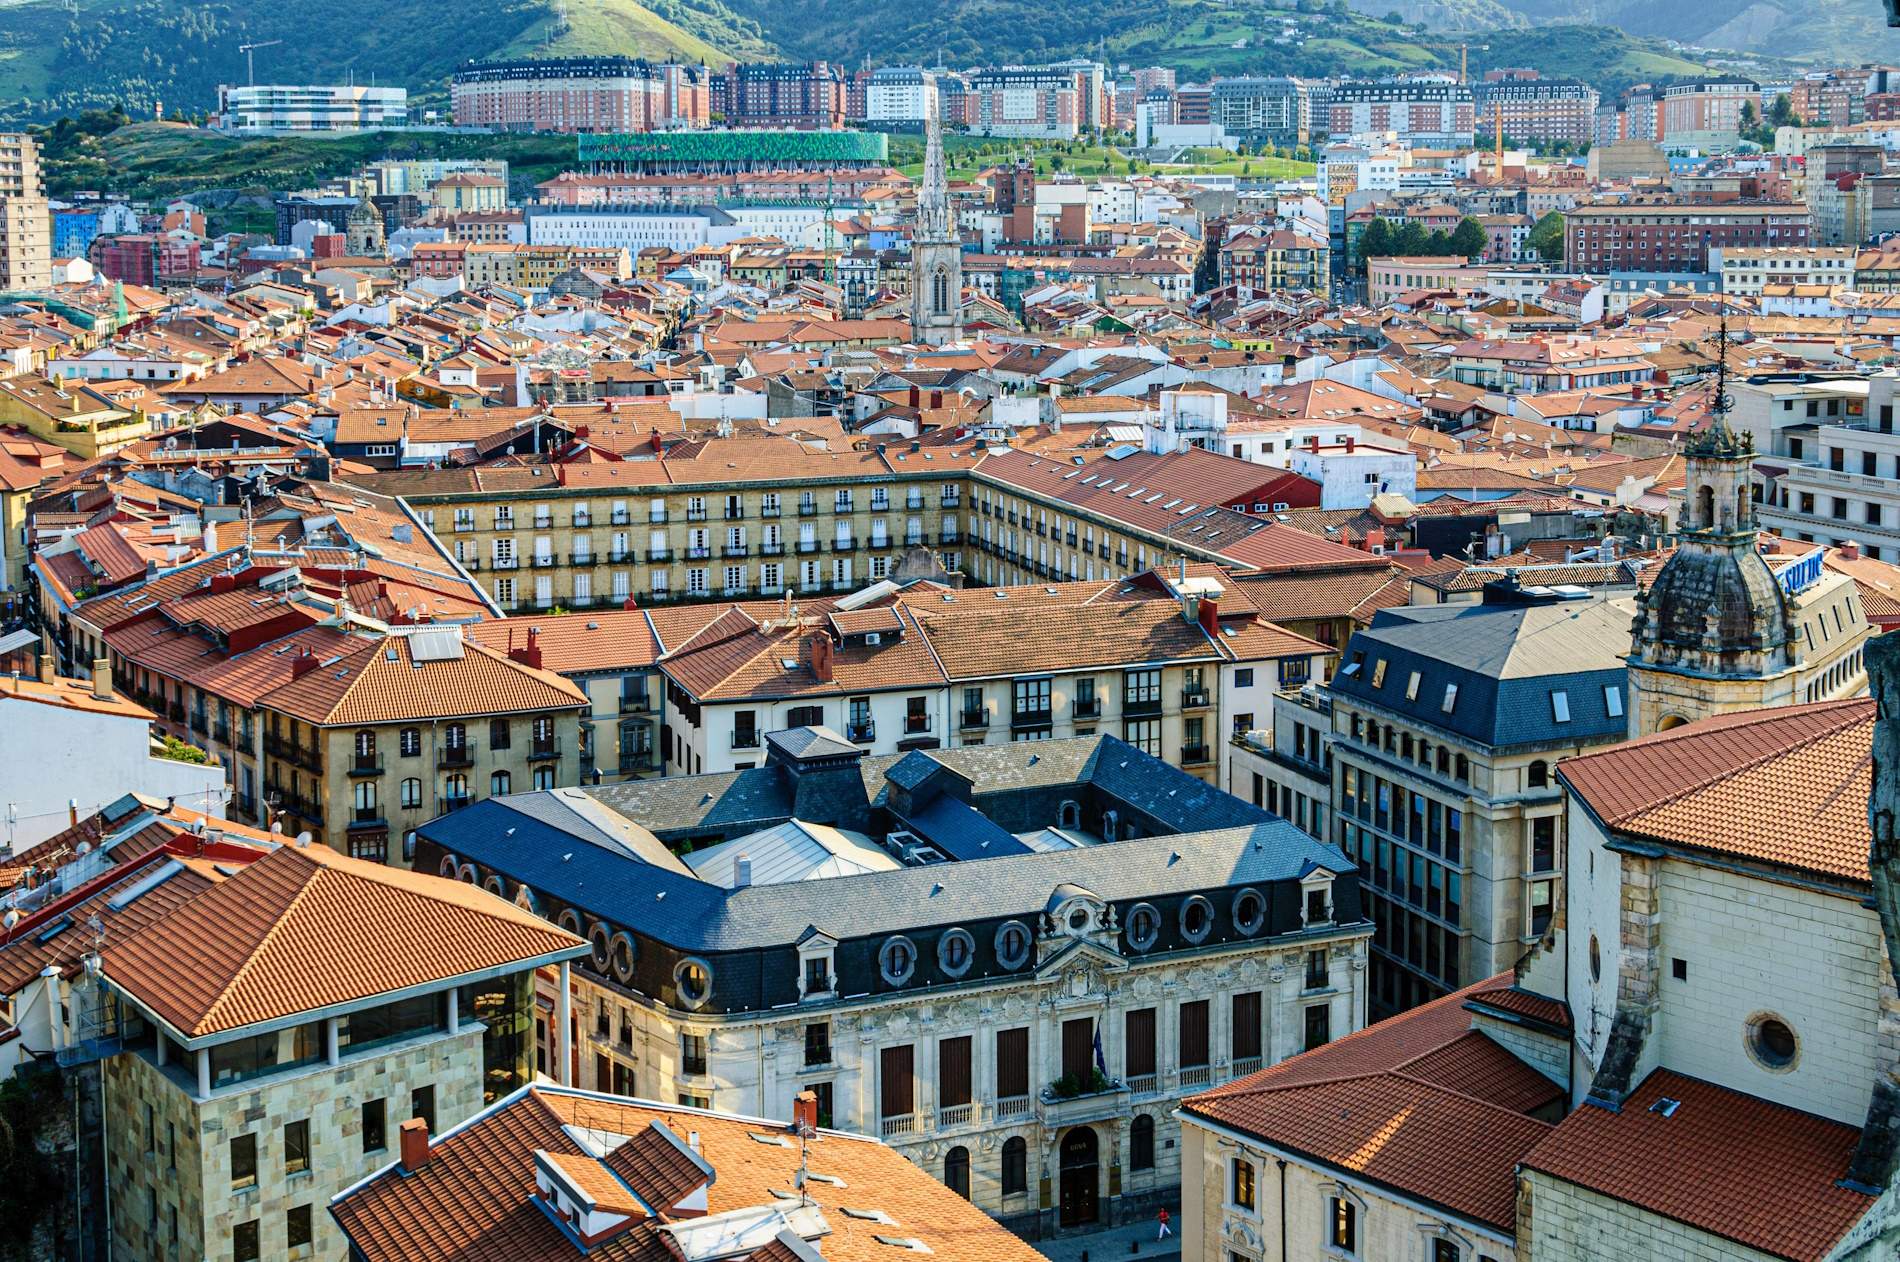 La gran fira tecnològica de la indústria alimentària arriba a Bilbao amb un impacte econòmic de 19 milions